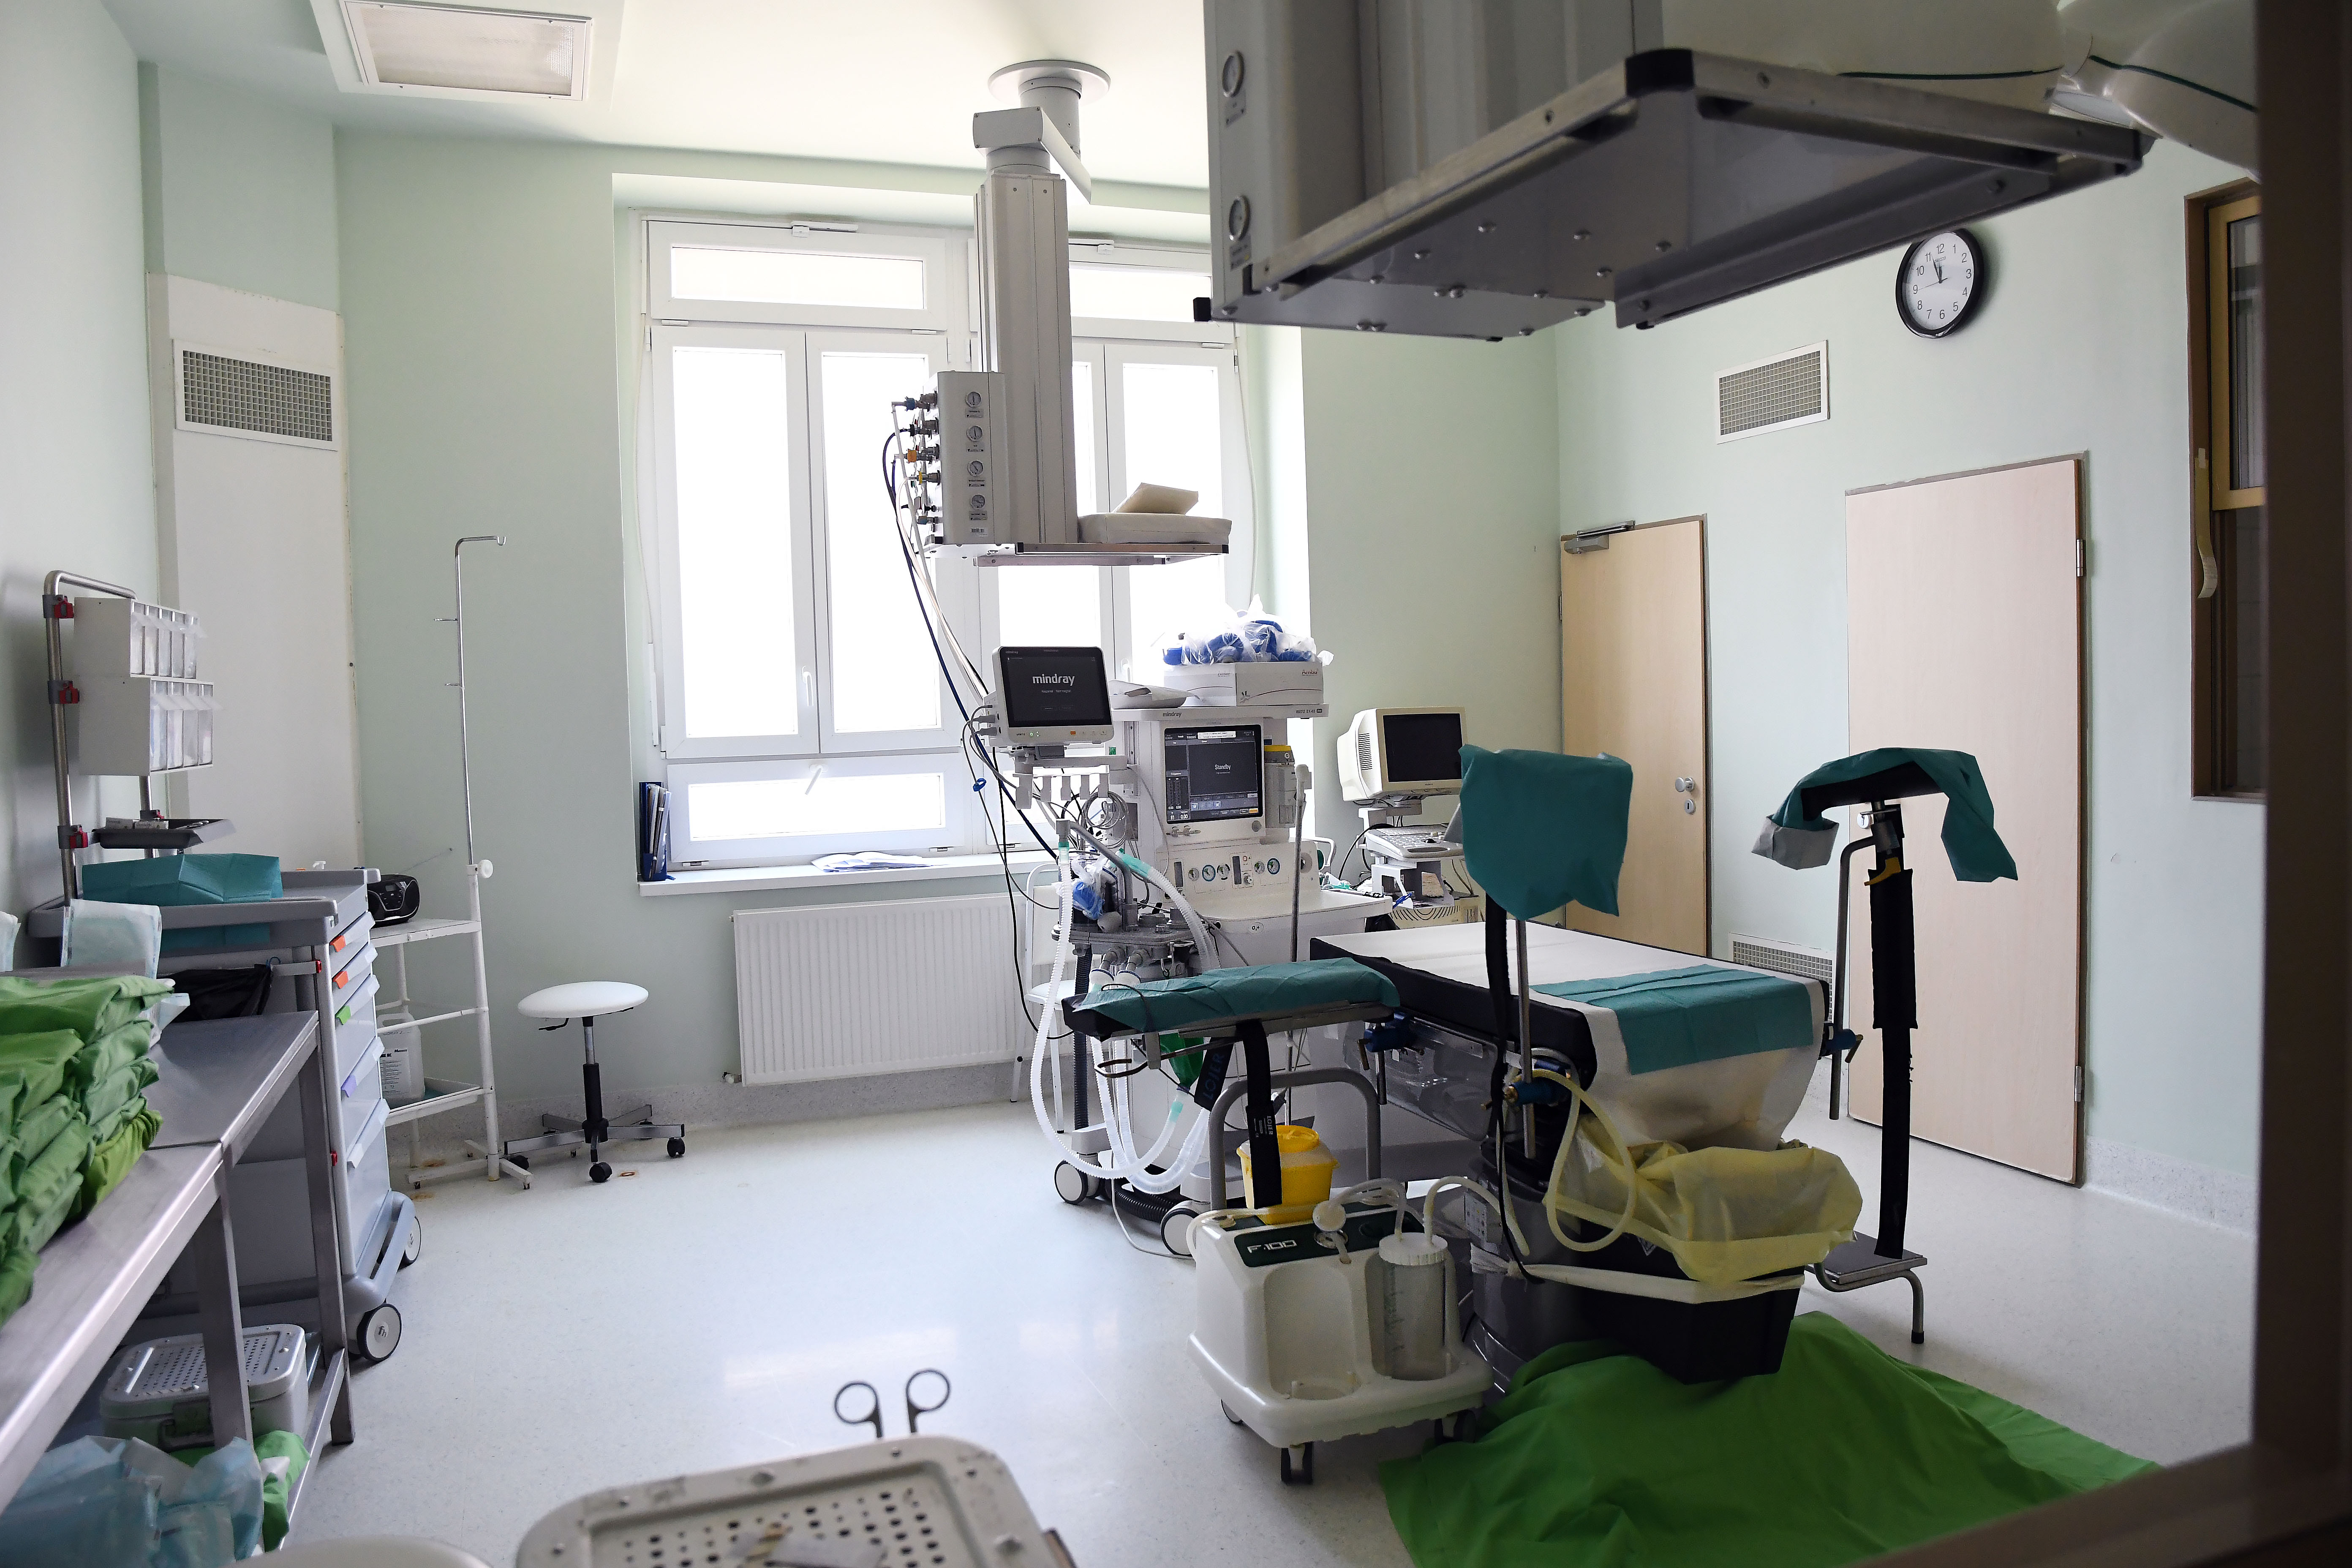 Kép egy kórteremről, benne orvosi eszközök